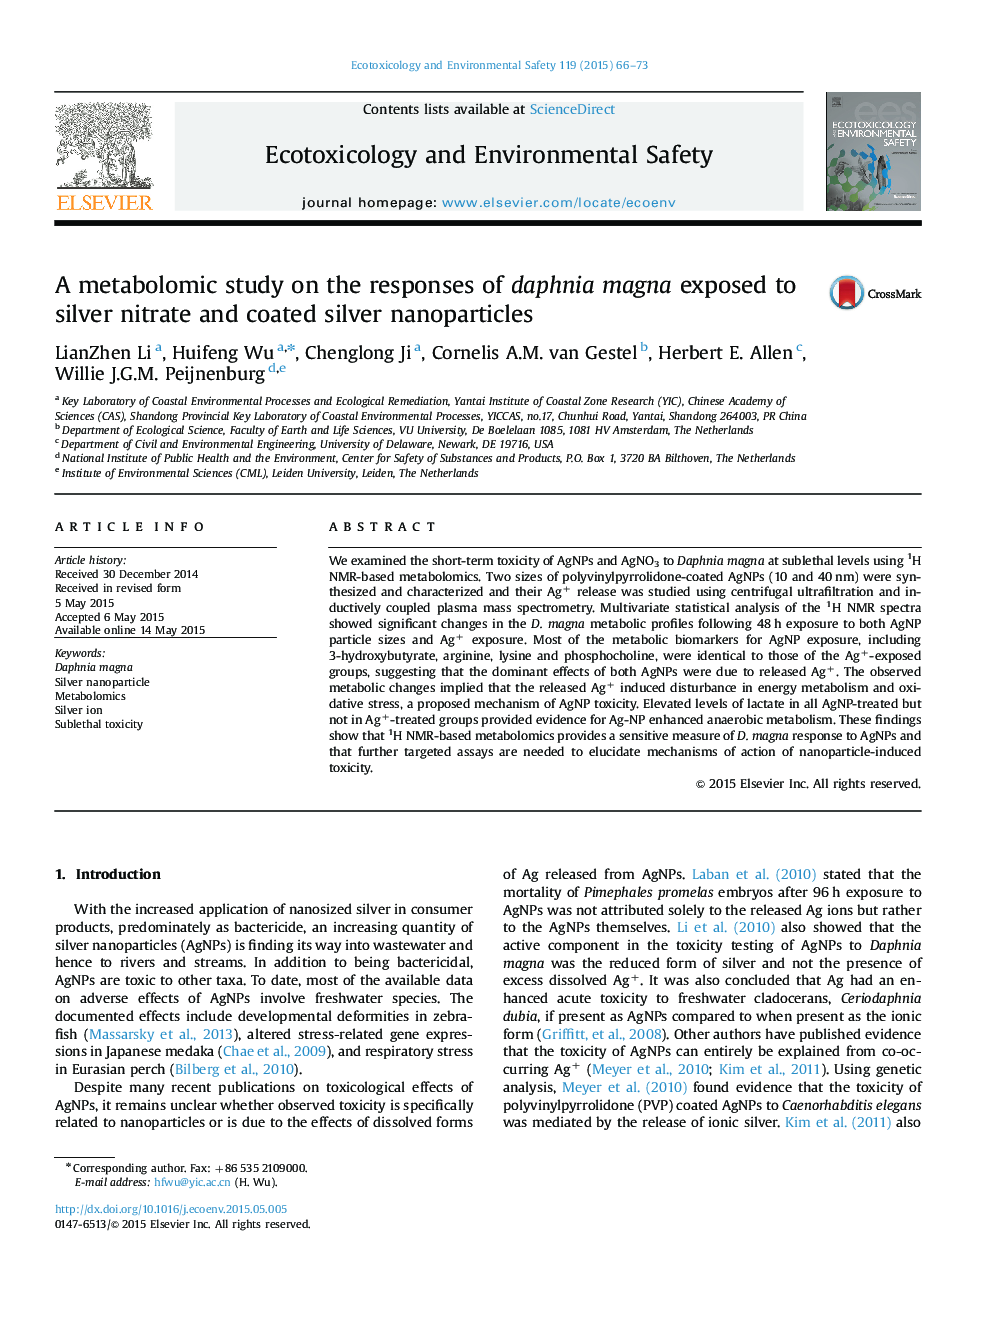 یک مطالعه متابولیکی بر روی پاسخهای دافنیا مگنا در معرض نیتروژن نقره و نانوذرات نقره ای پوشش داده شده است 